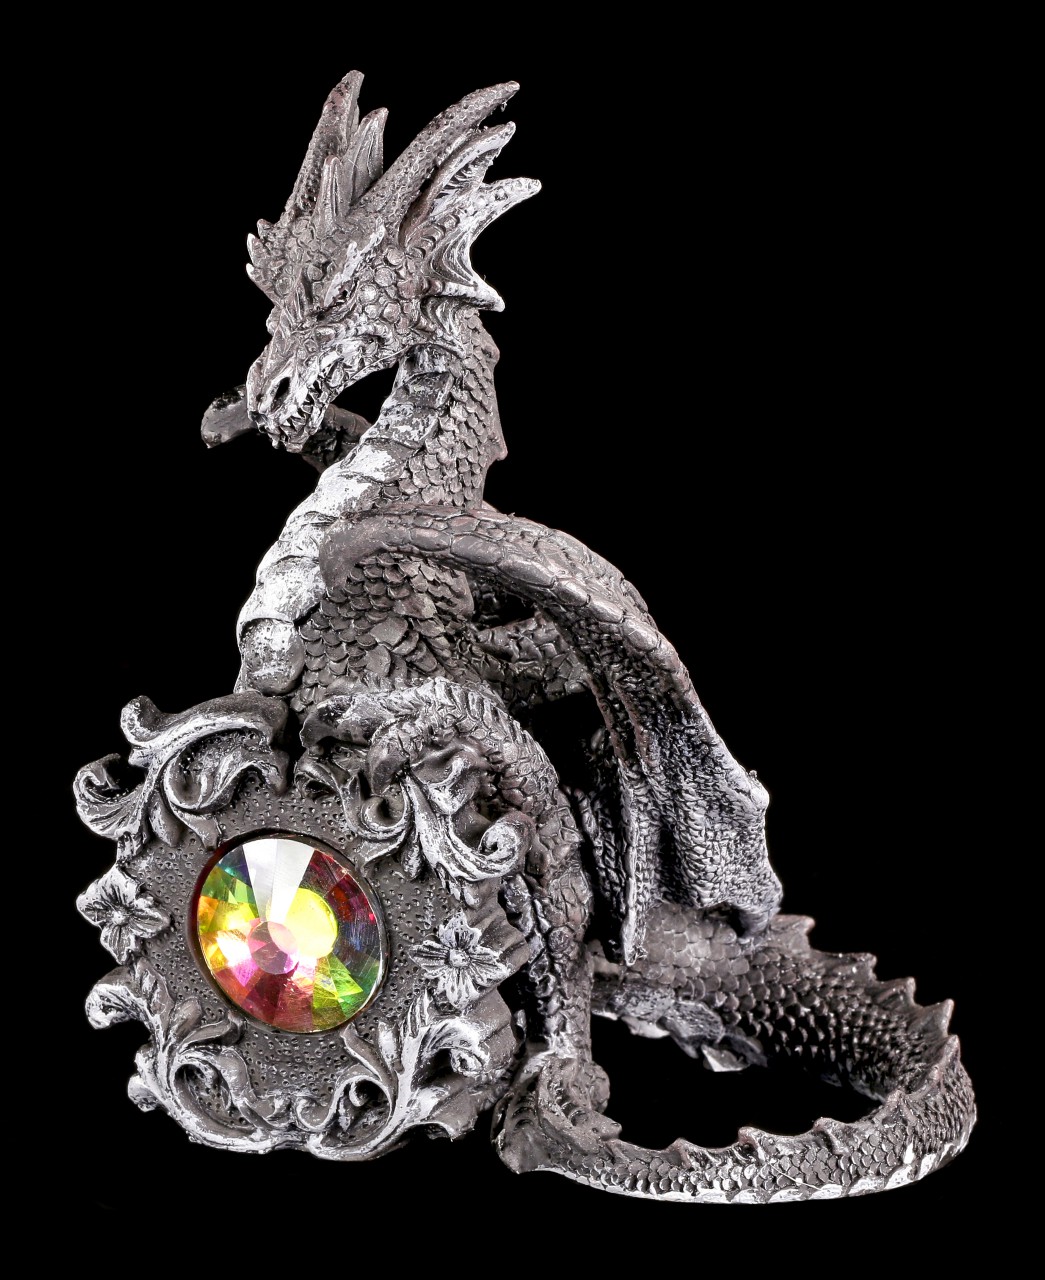 Black Dragon Figurine sitting behind a Crystal